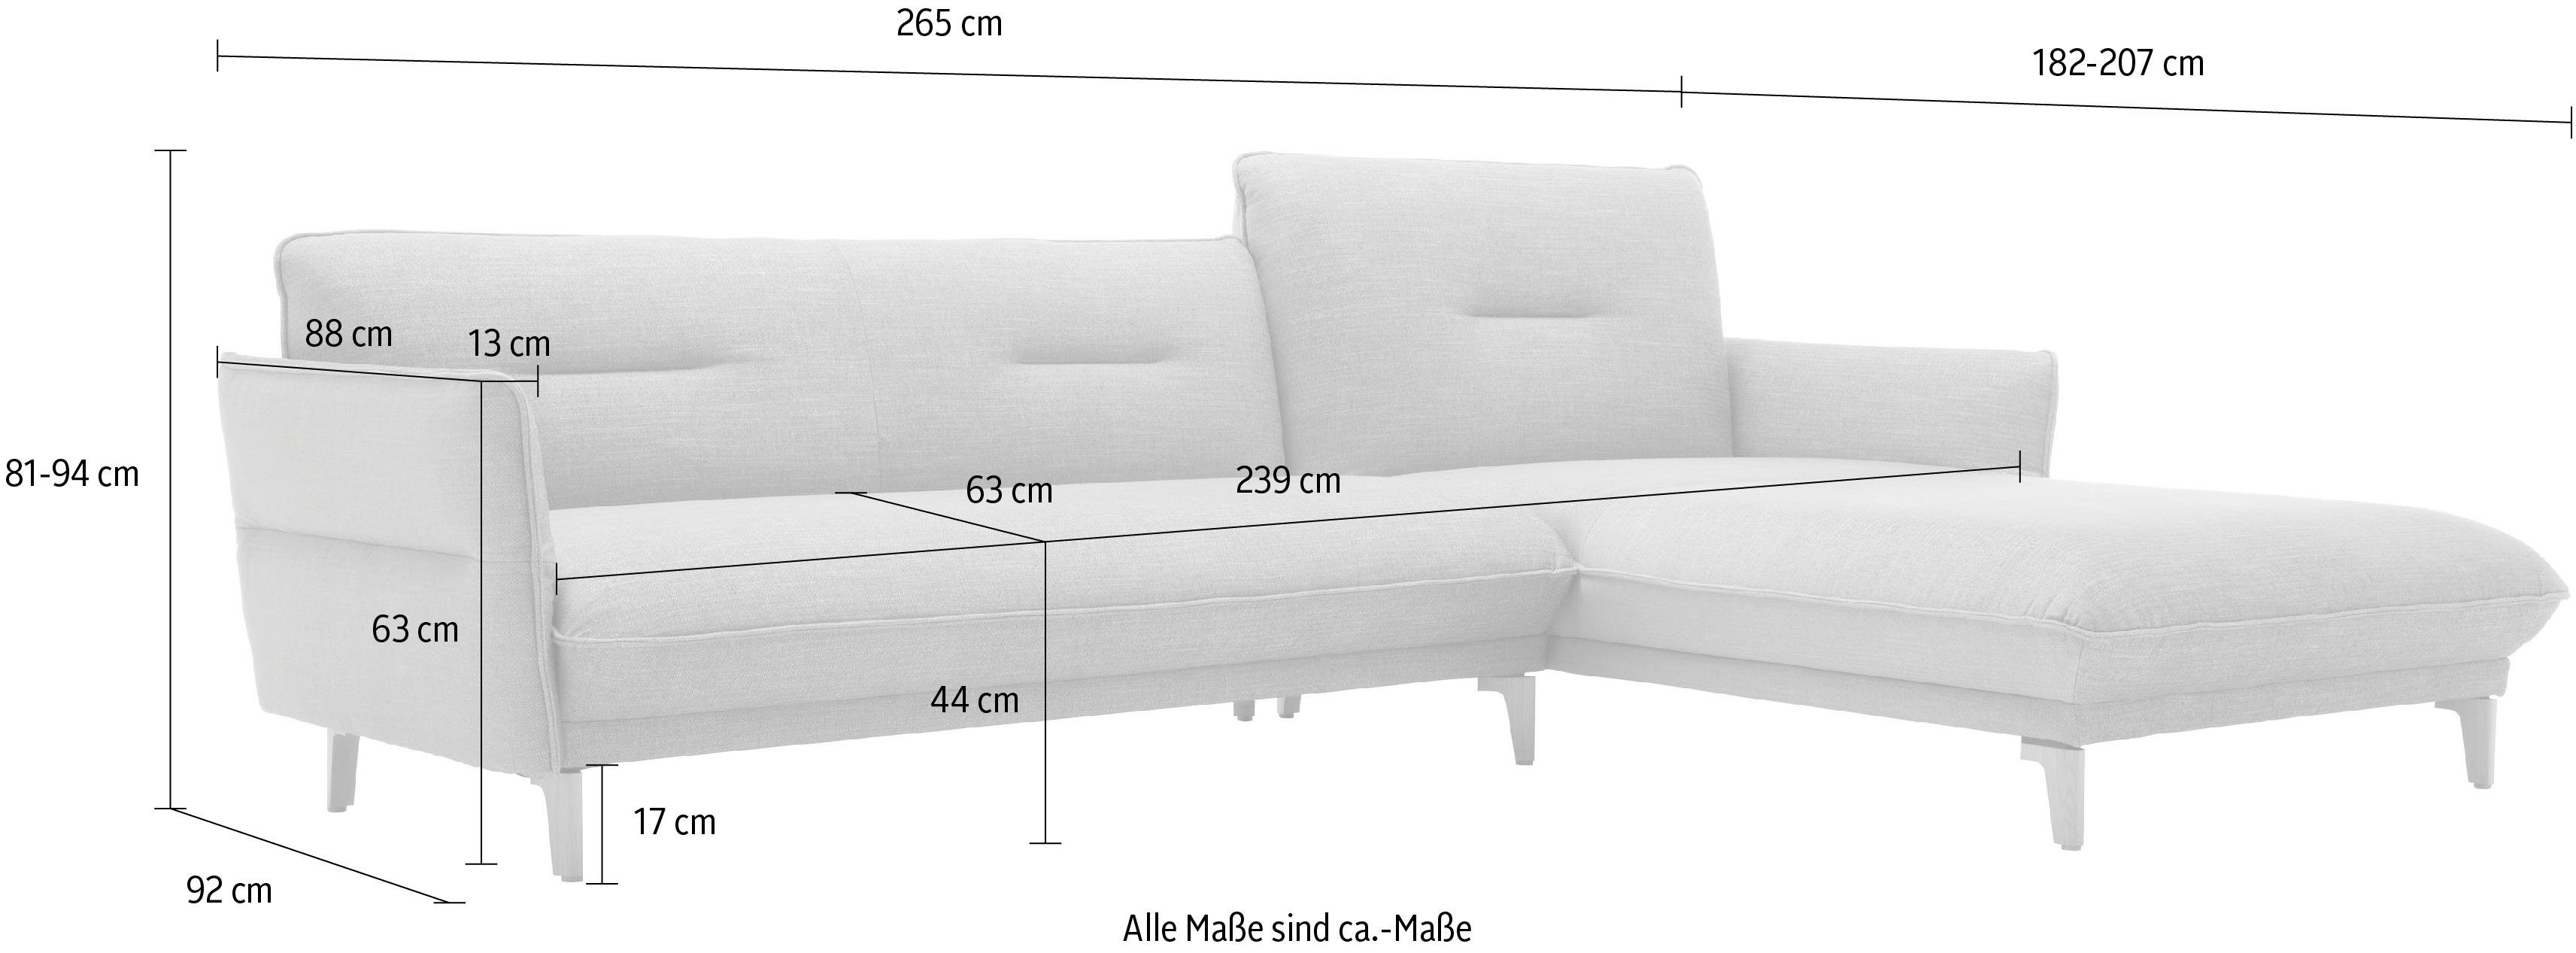 Breite 068-76 Recamiere farngrün-natur hs.430, hülsta Ecksofa mit Rücken cm 265 Neigefunktion, hoher sofa